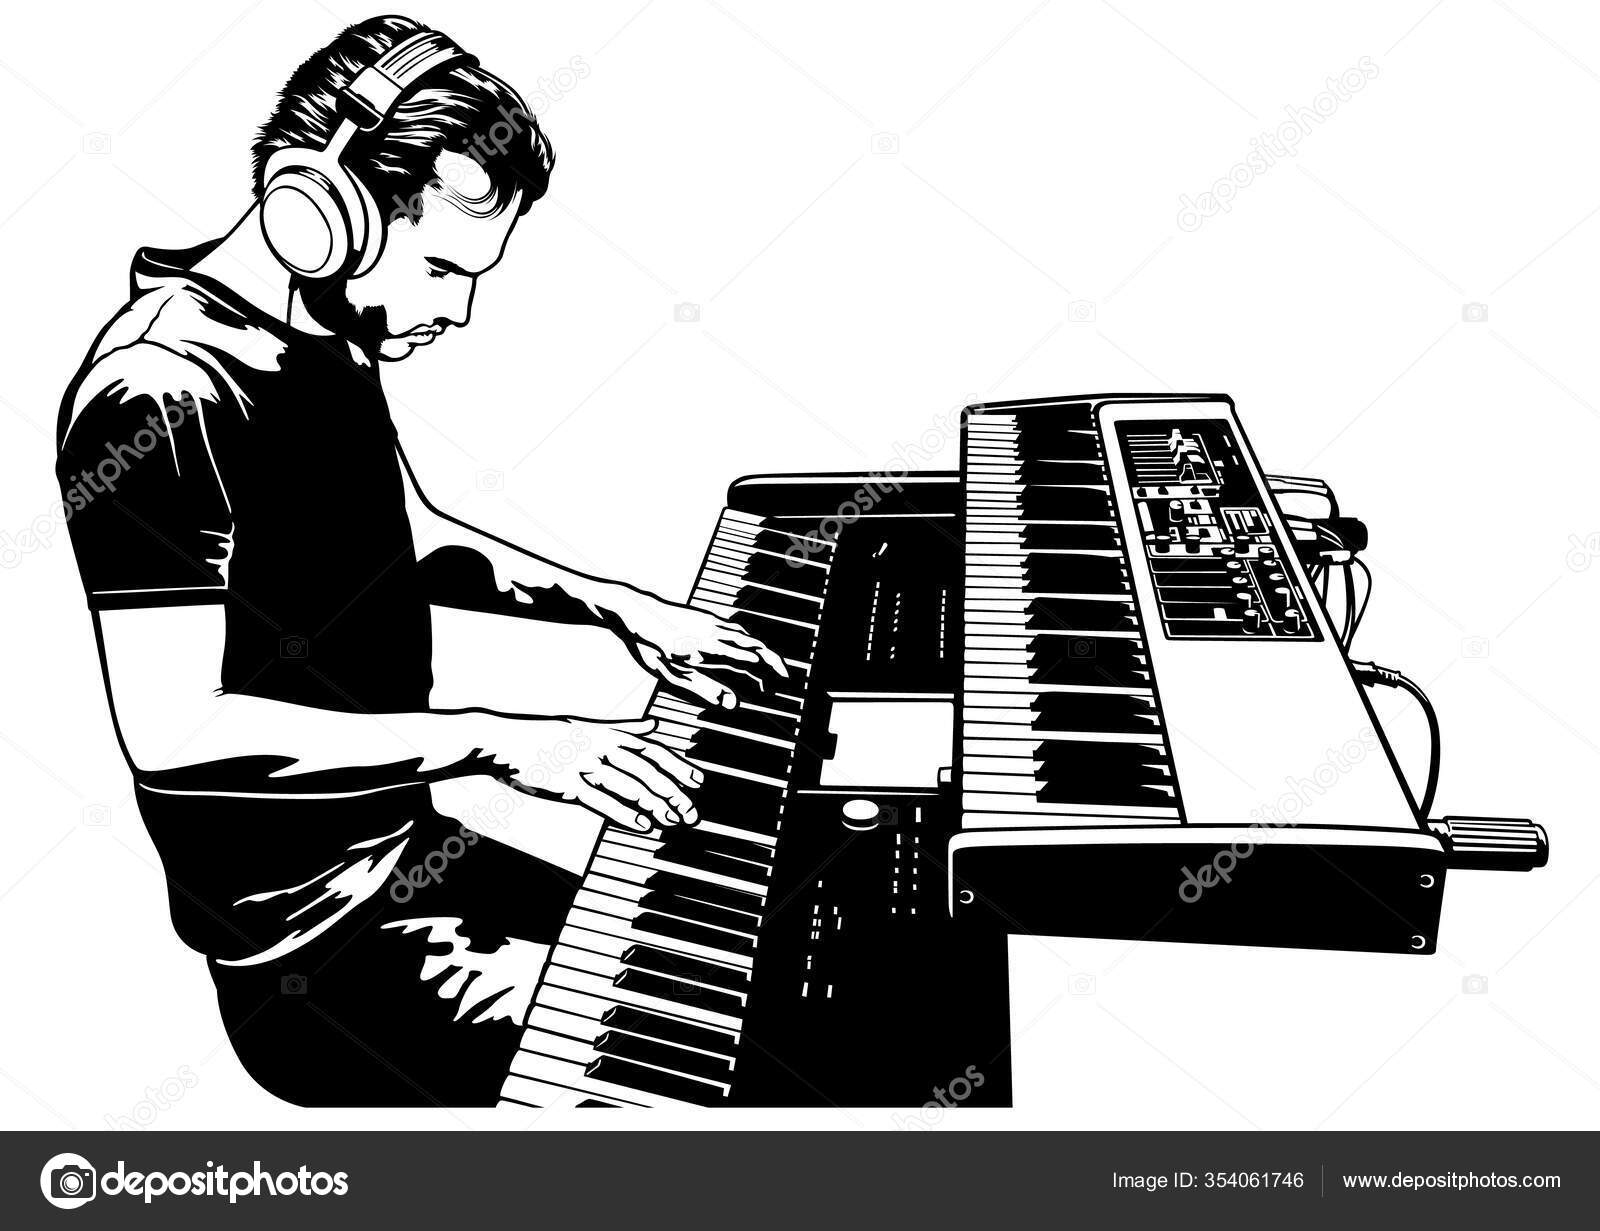 Jogo Da Música Do Piano Do Músico Do Pianista. Foto de Stock - Imagem de  chave, preto: 21569992